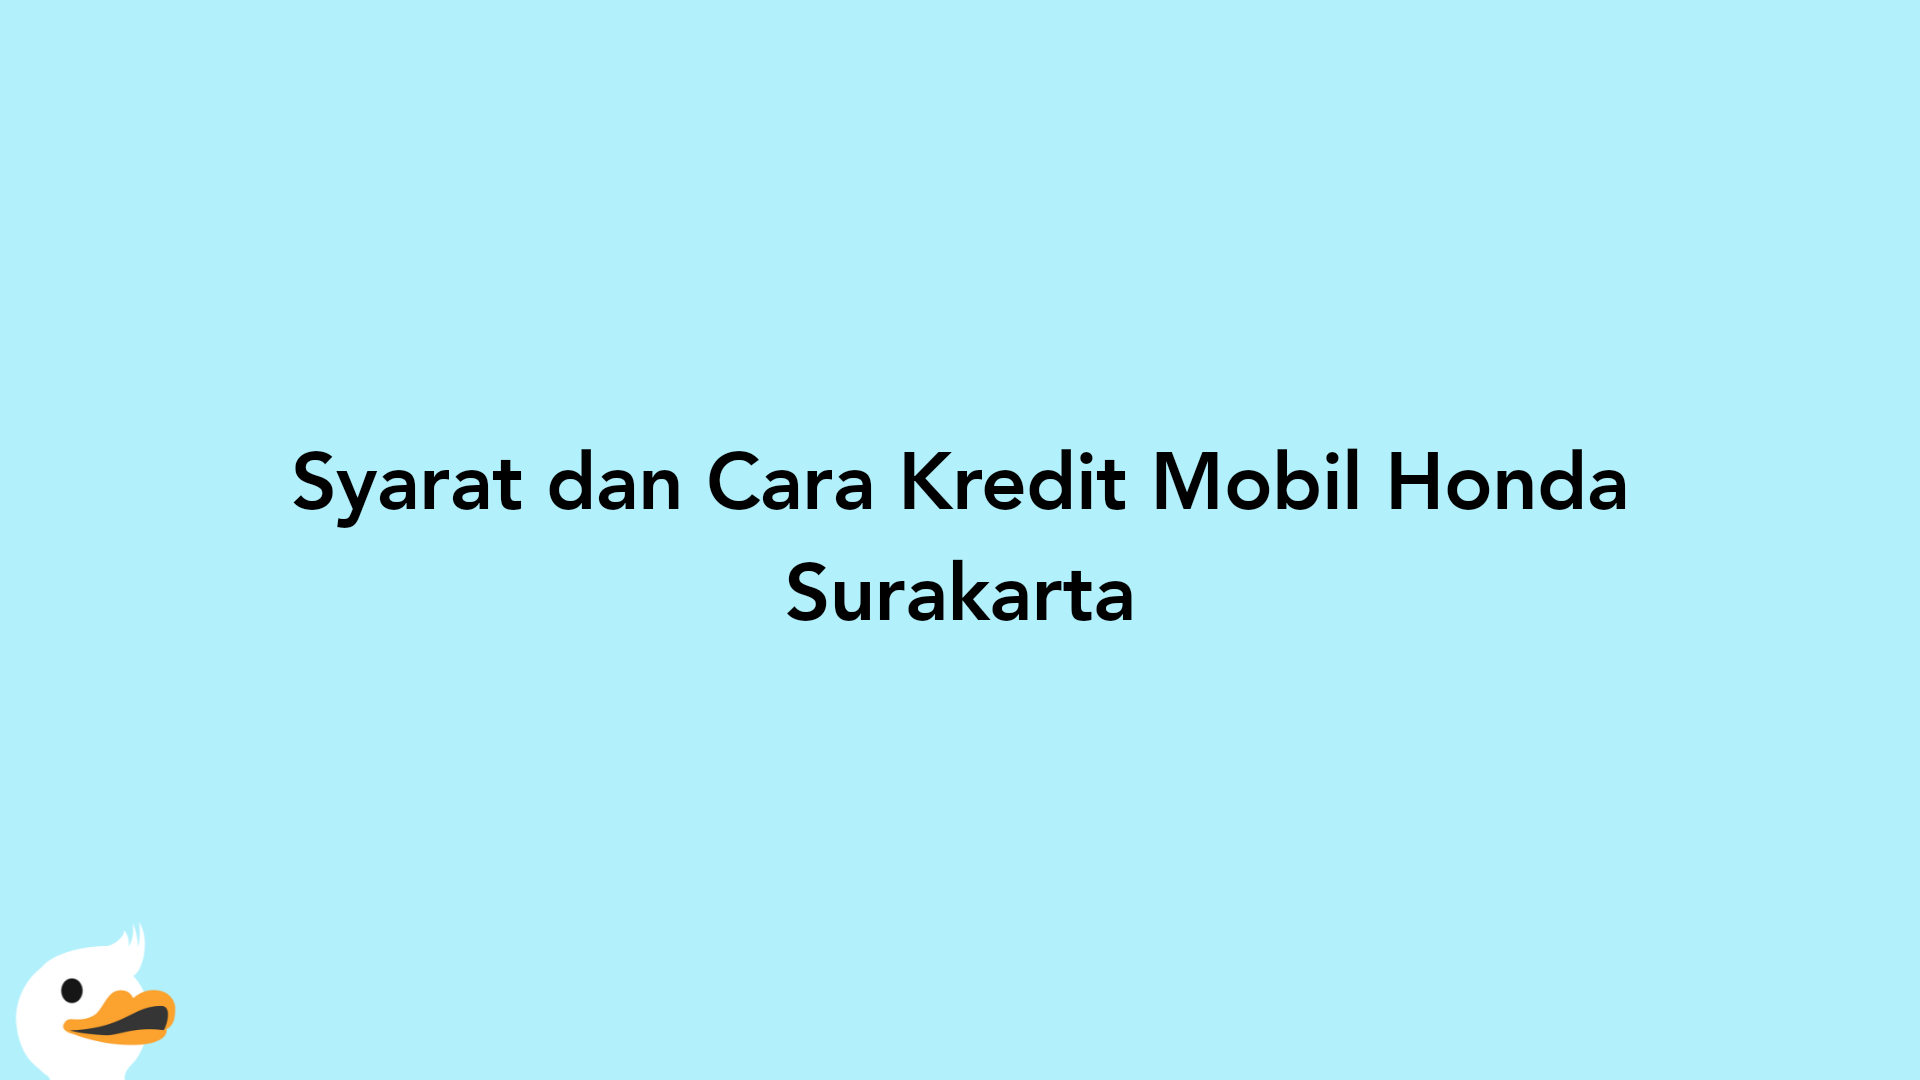 Syarat dan Cara Kredit Mobil Honda Surakarta